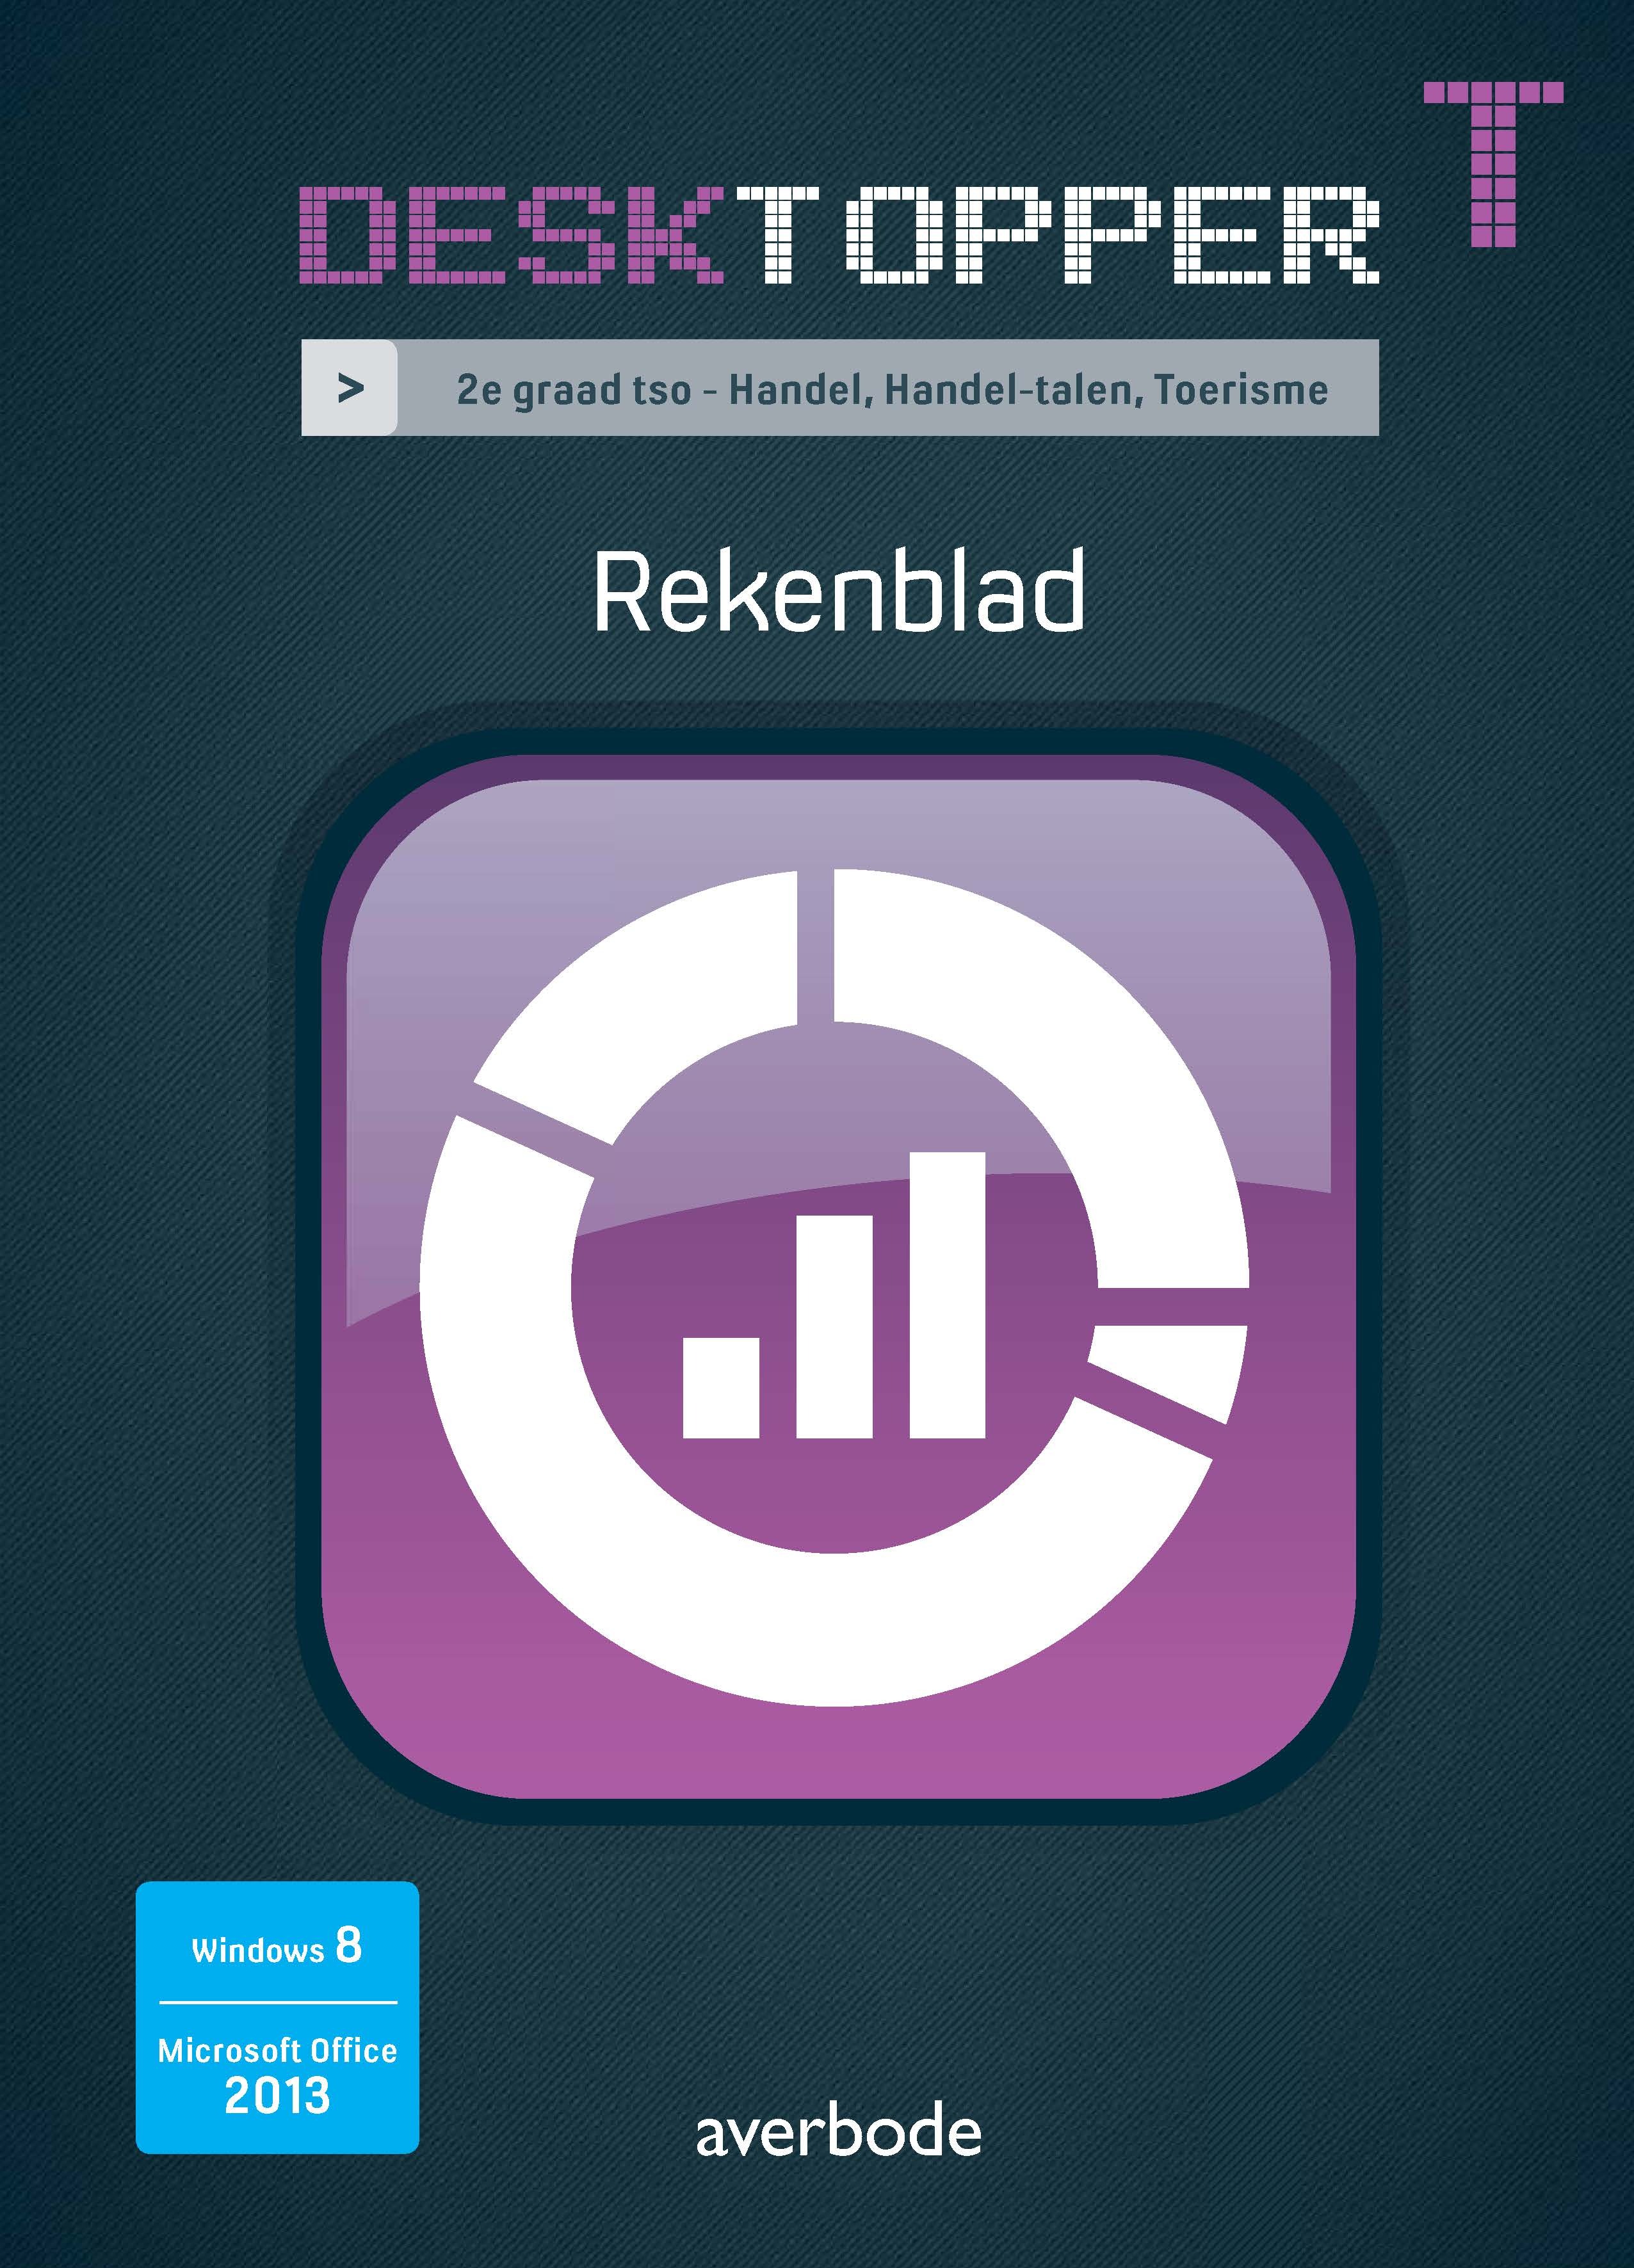 Desktopper T Rekenblad Windows 8 Office 2013. 2e graad tso - Handel, Handel-talen, Toerisme